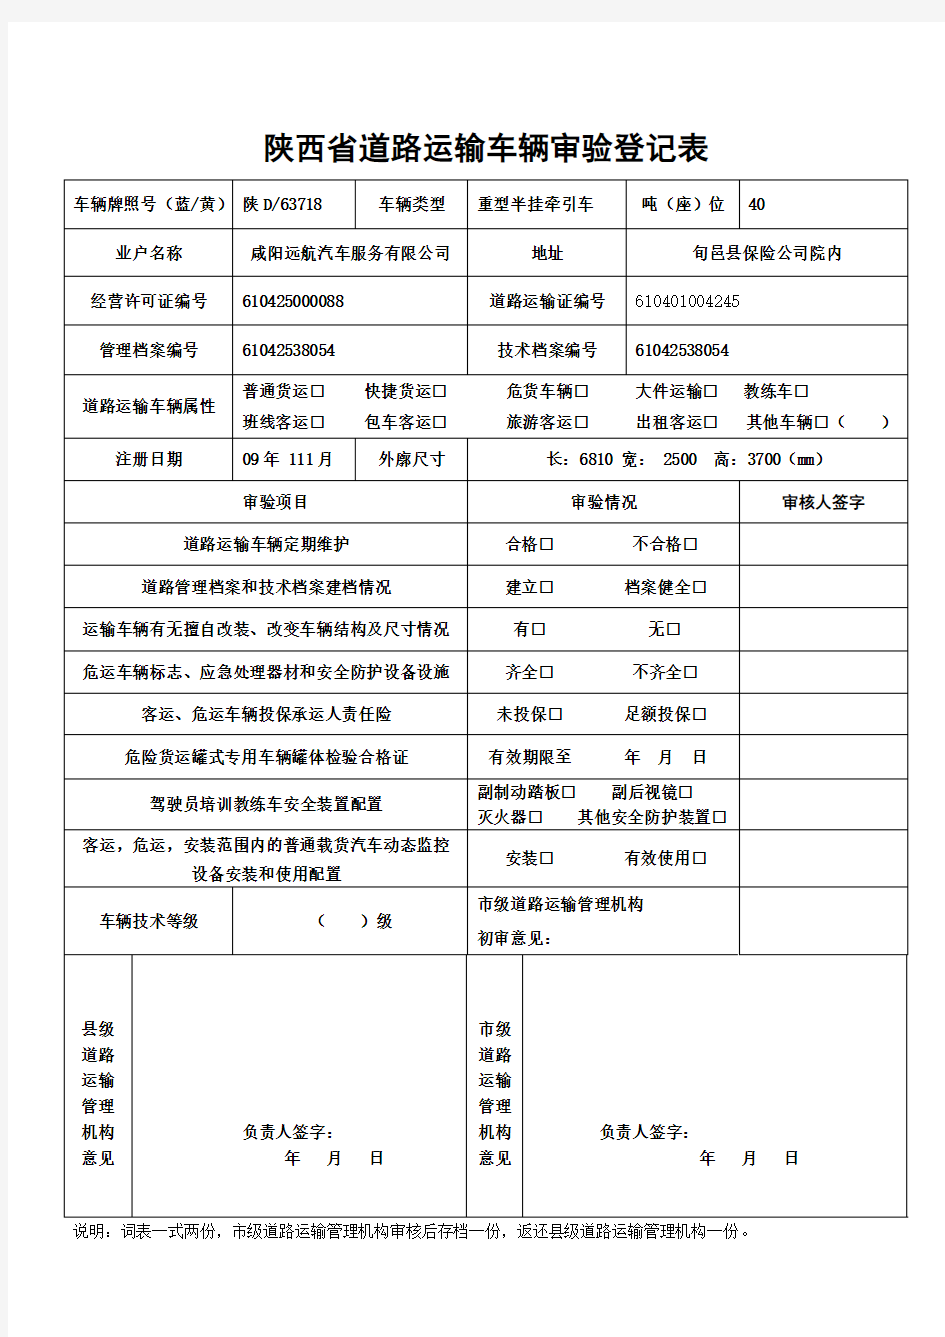 陕西省道路运输车辆审验登记表